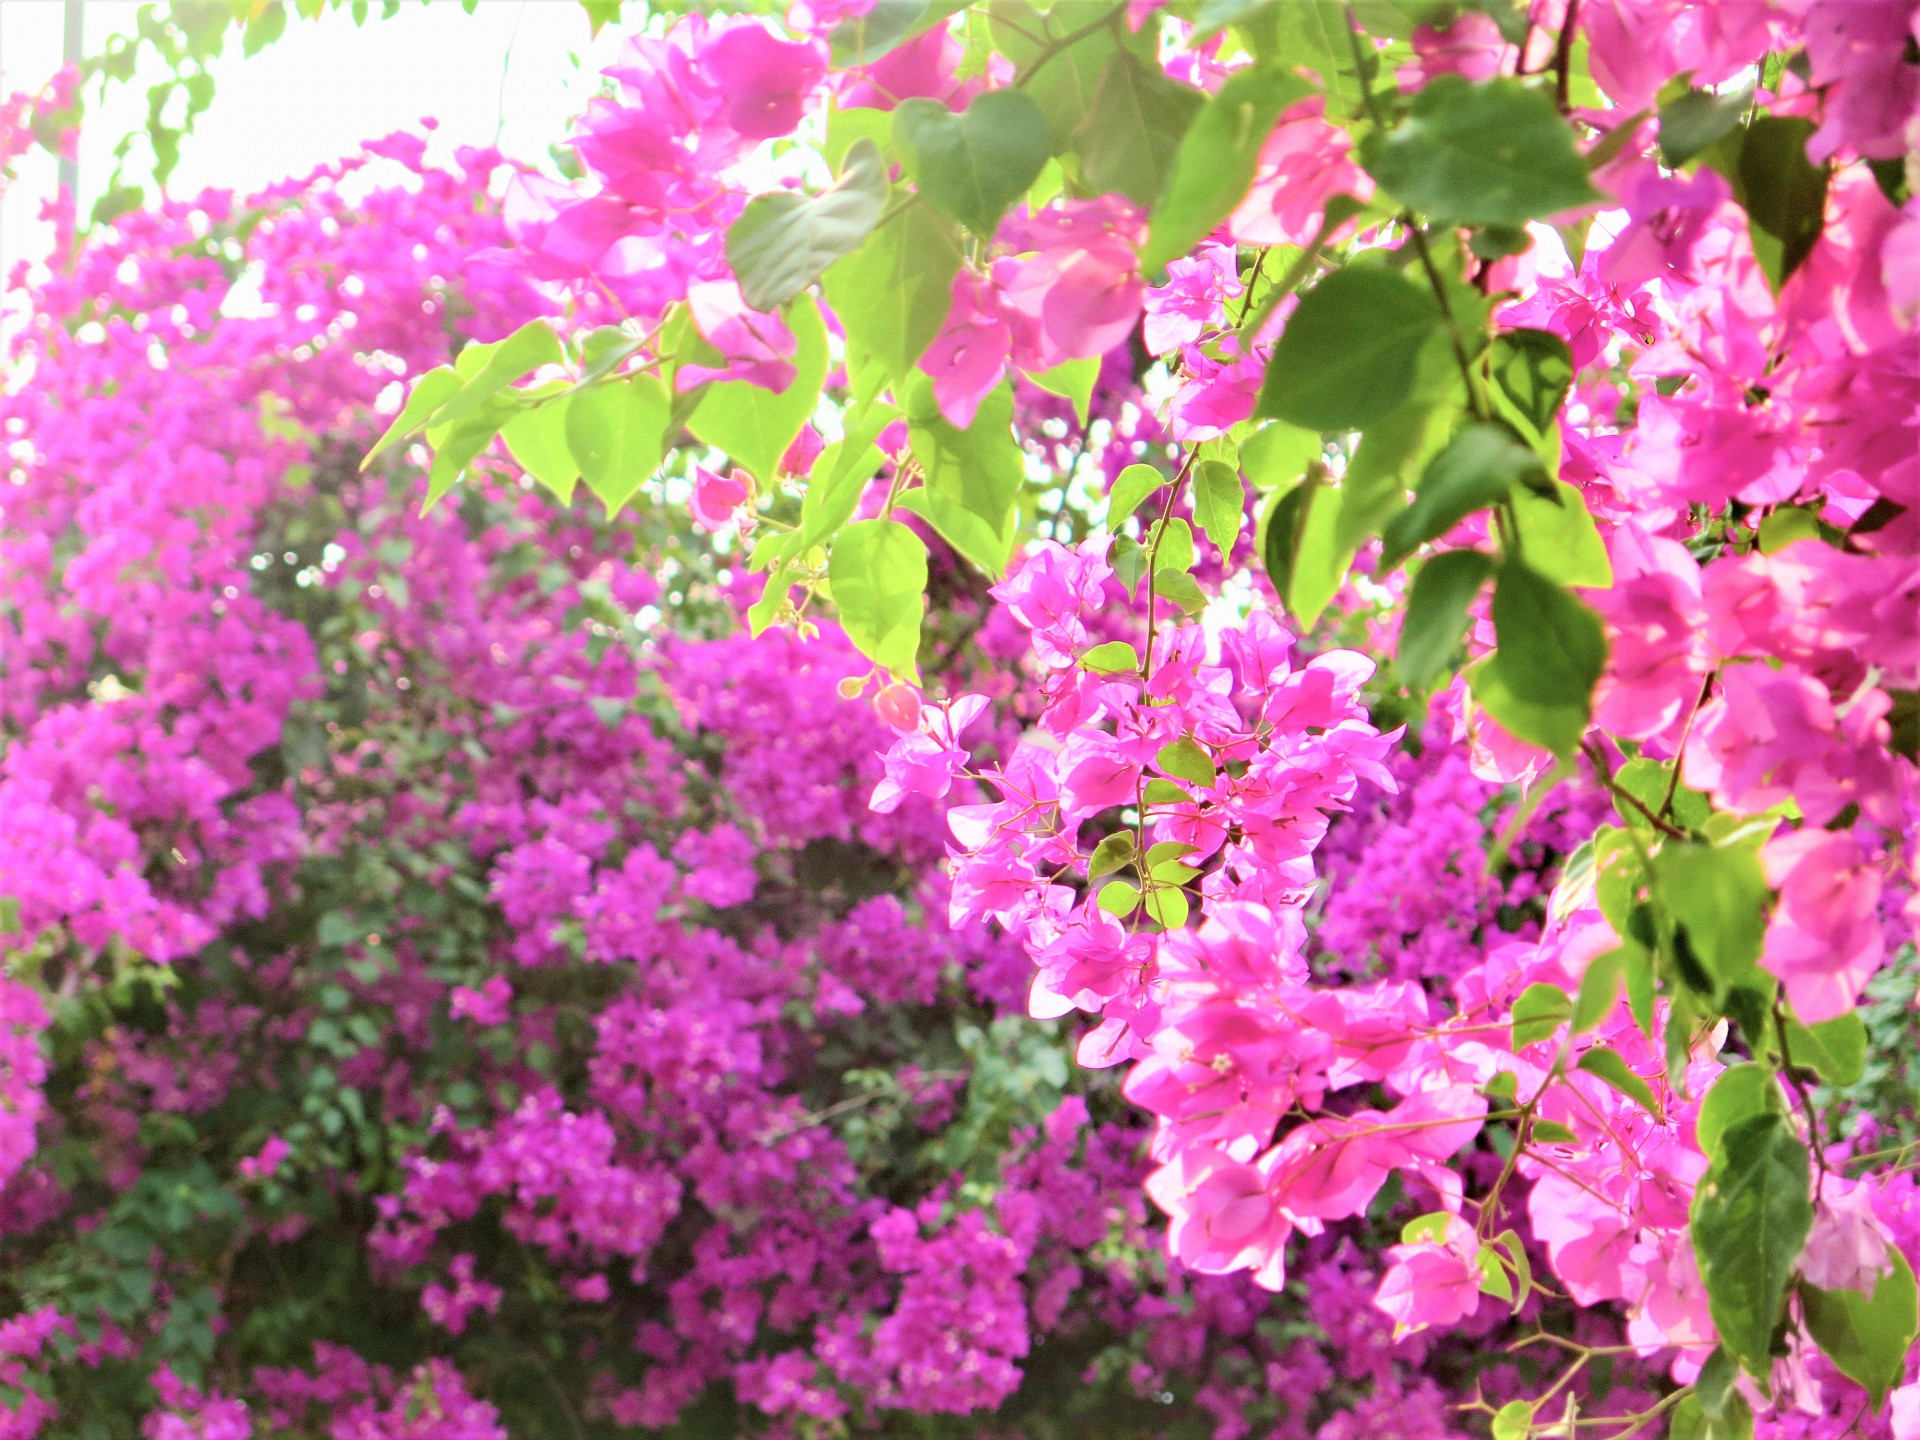 Hoa giấy có nguồn gốc từ Brazil. Vì dễ chăm sóc, chịu được nhiệt độ cao, loài hoa này đã nhanh chóng trở nên phổ biến ở Việt Nam và “ghi điểm” bởi nhiều màu sắc khác nhau.